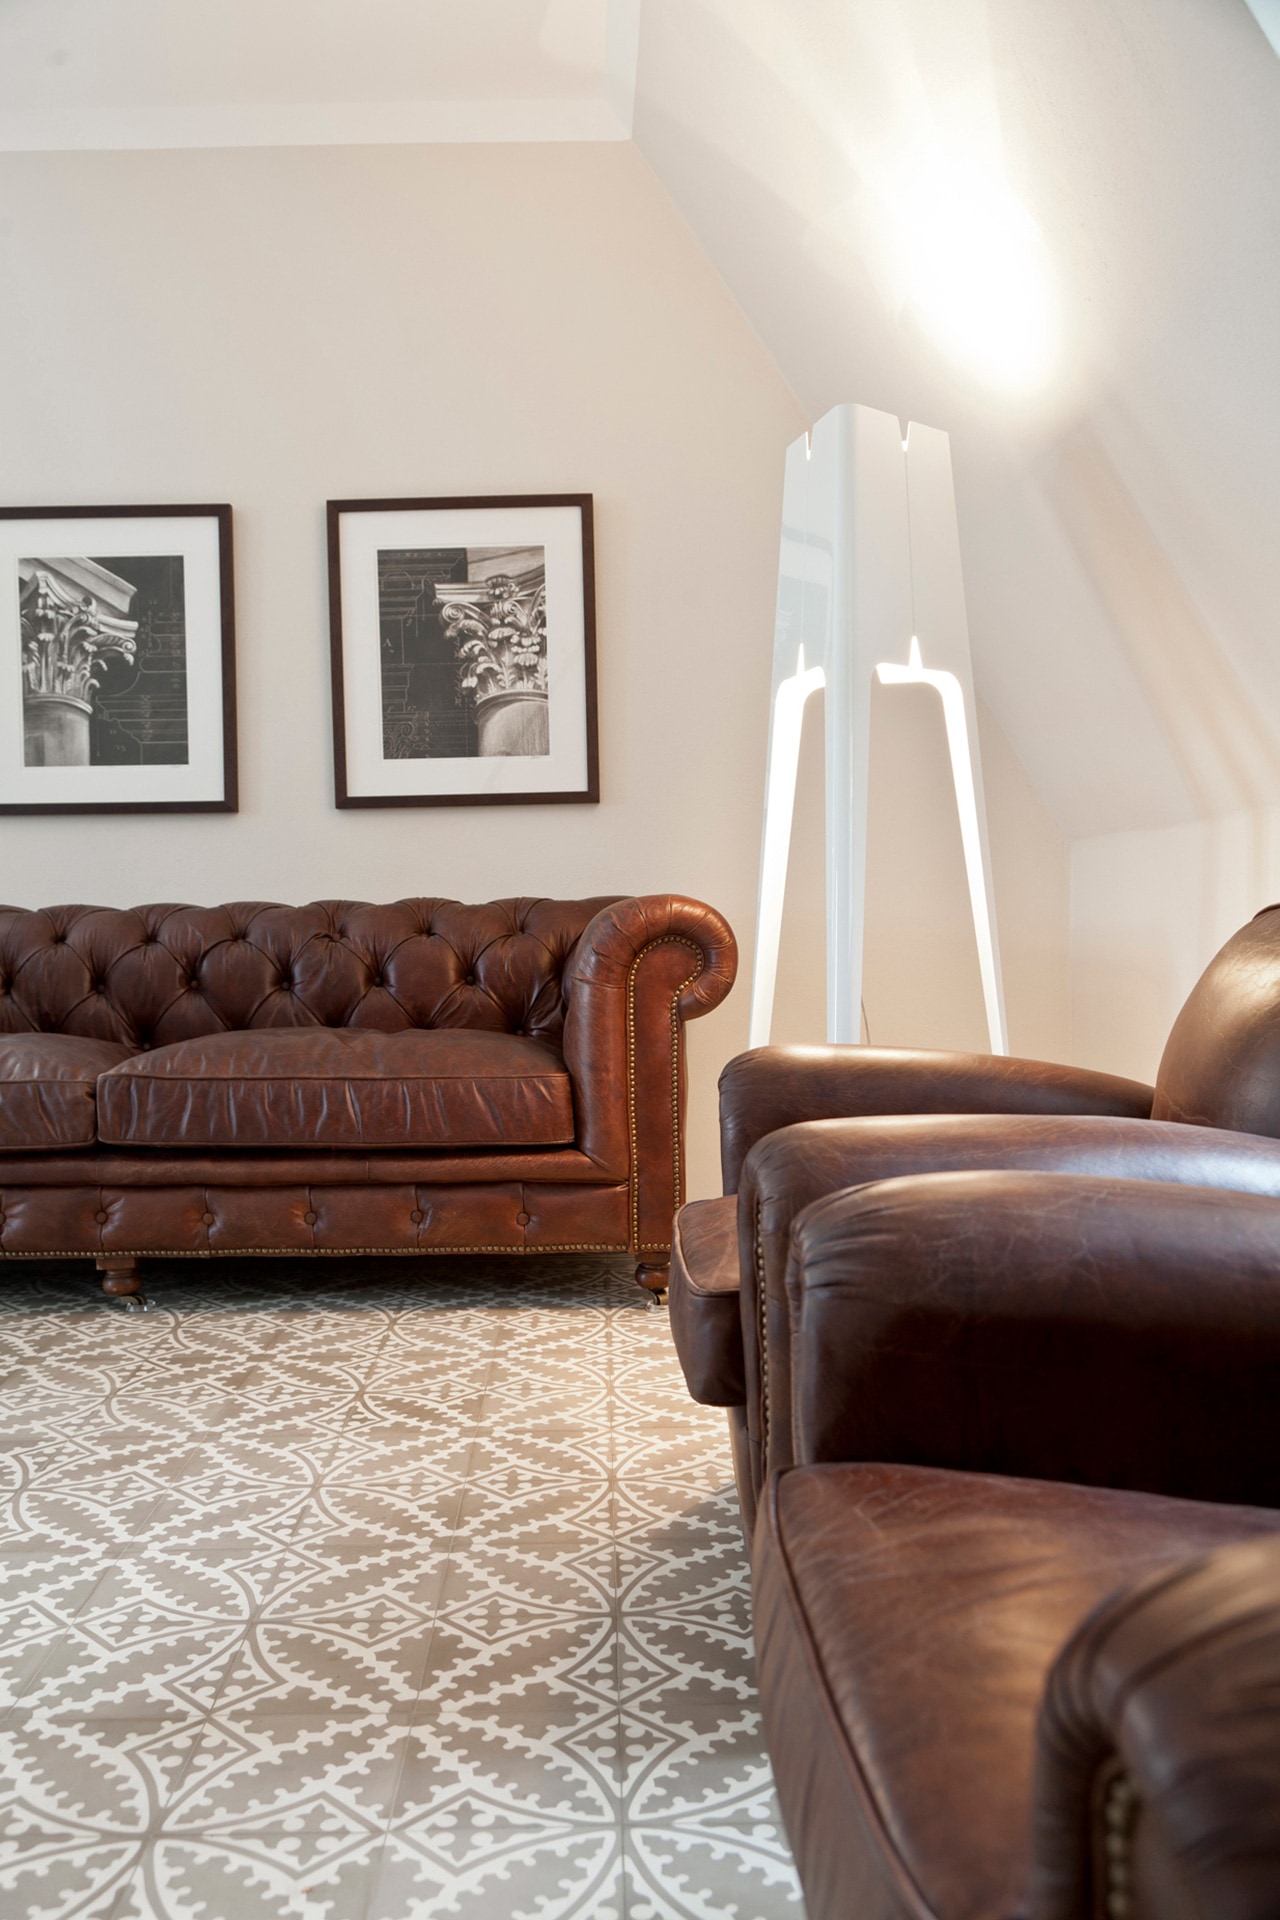 VIA Zementfliese N° 17354 im Wohnbereich in Kombination mit braunen Möbeln